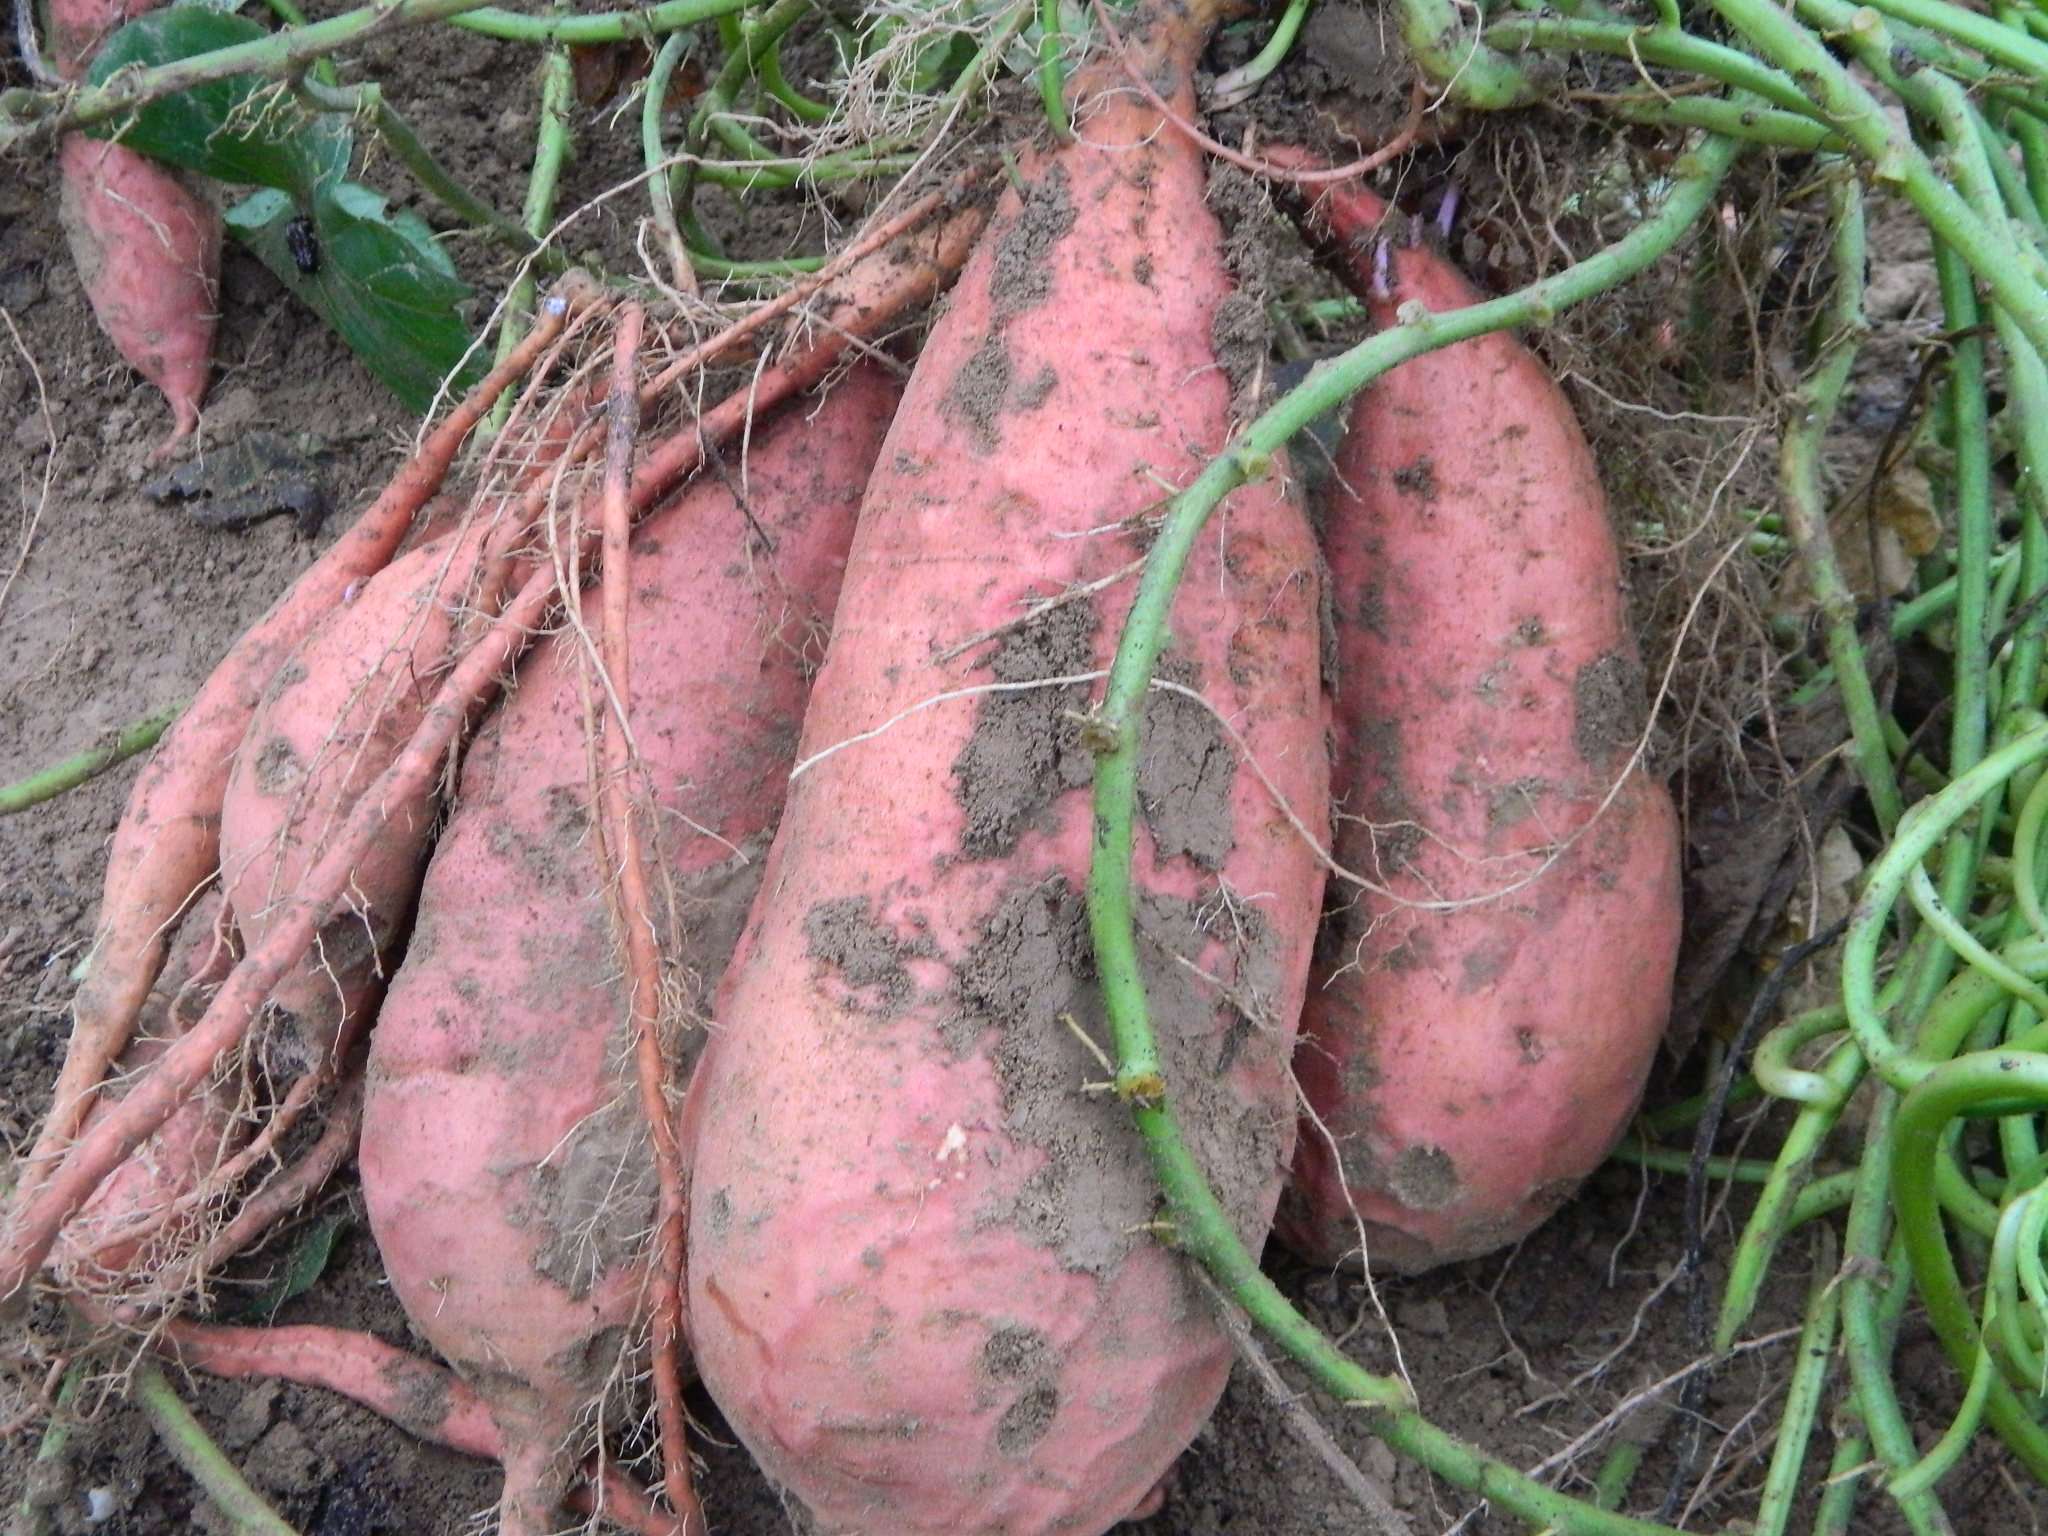 山东红薯批发 德州红薯批发基地 红薯种植园